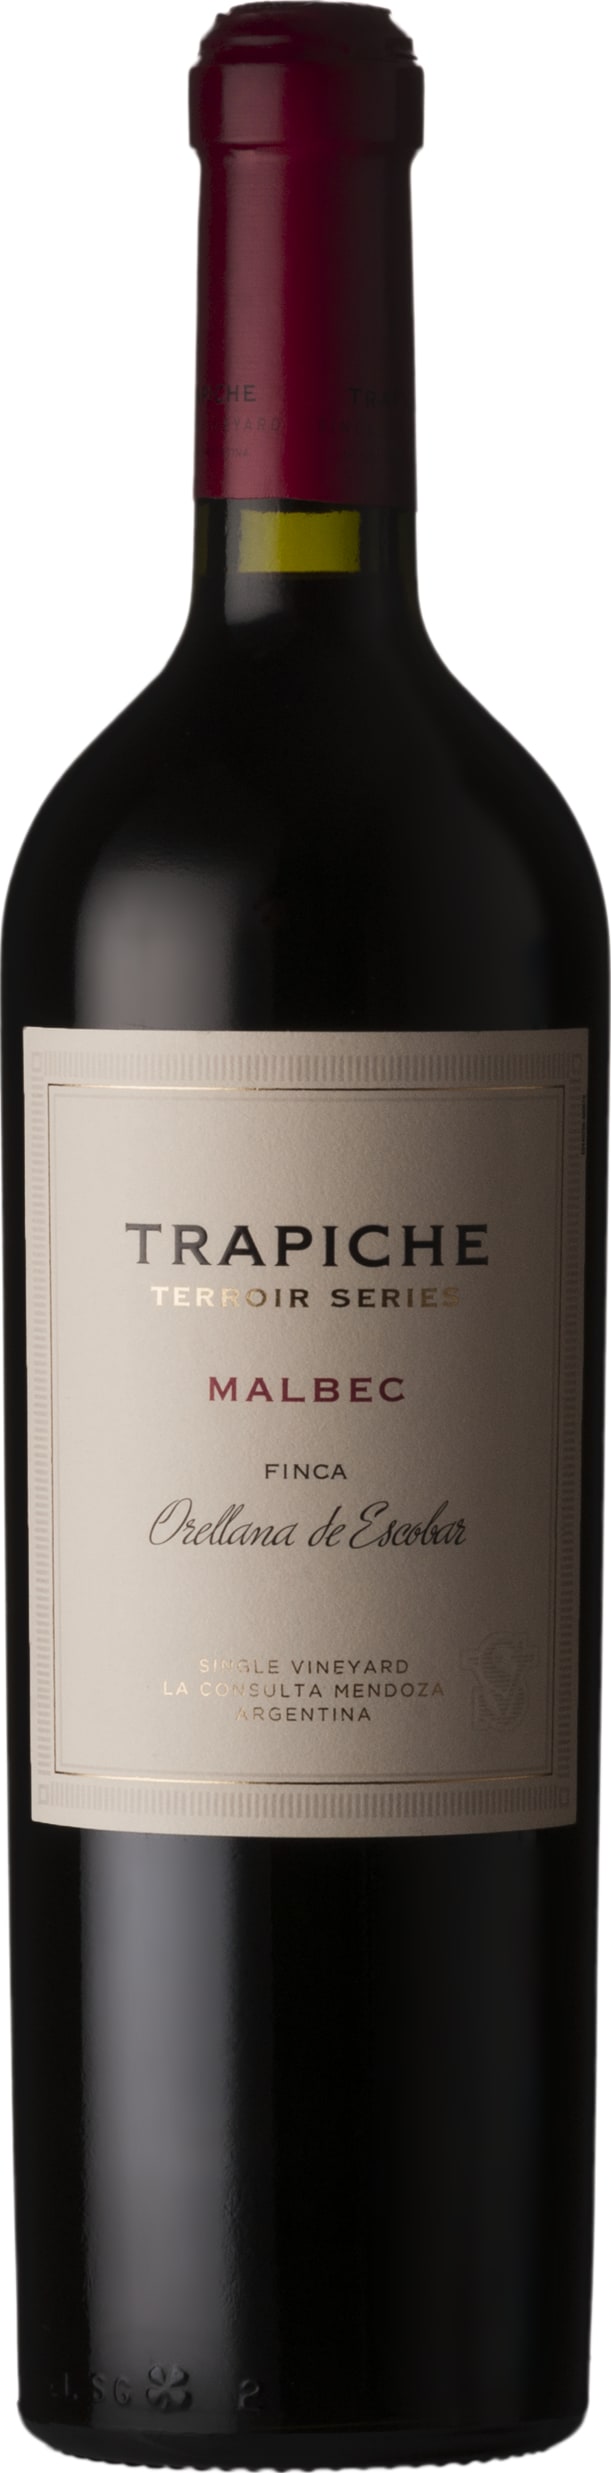 Trapiche Terroir Series Finca Orellana 2017 75cl - Buy Trapiche Wines from GREAT WINES DIRECT wine shop